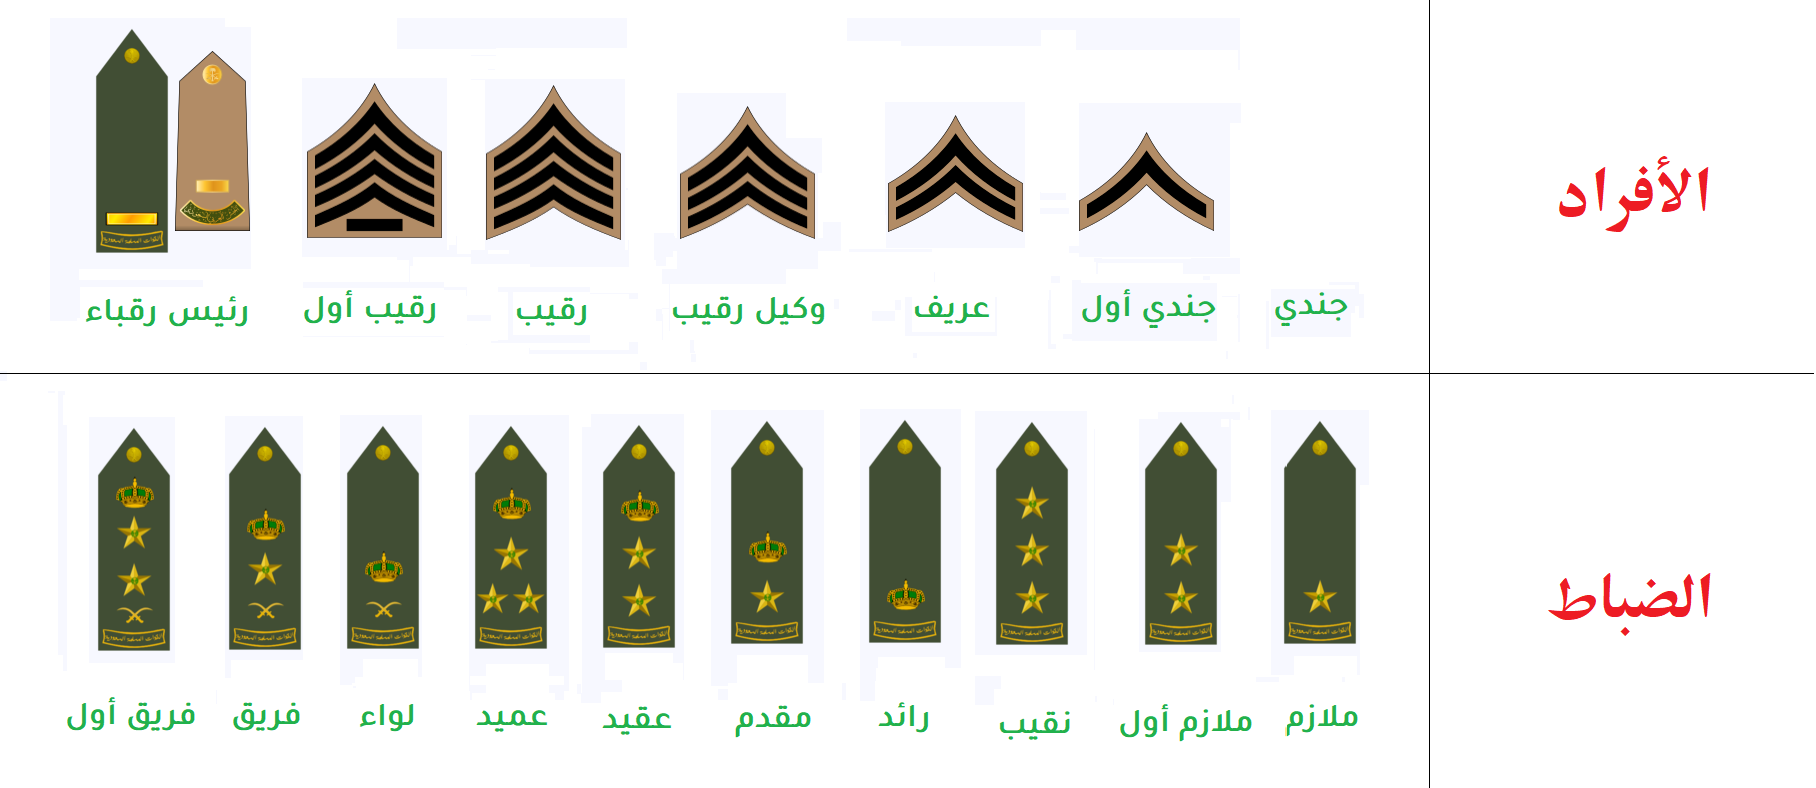 الرتب العسكرية السعودية